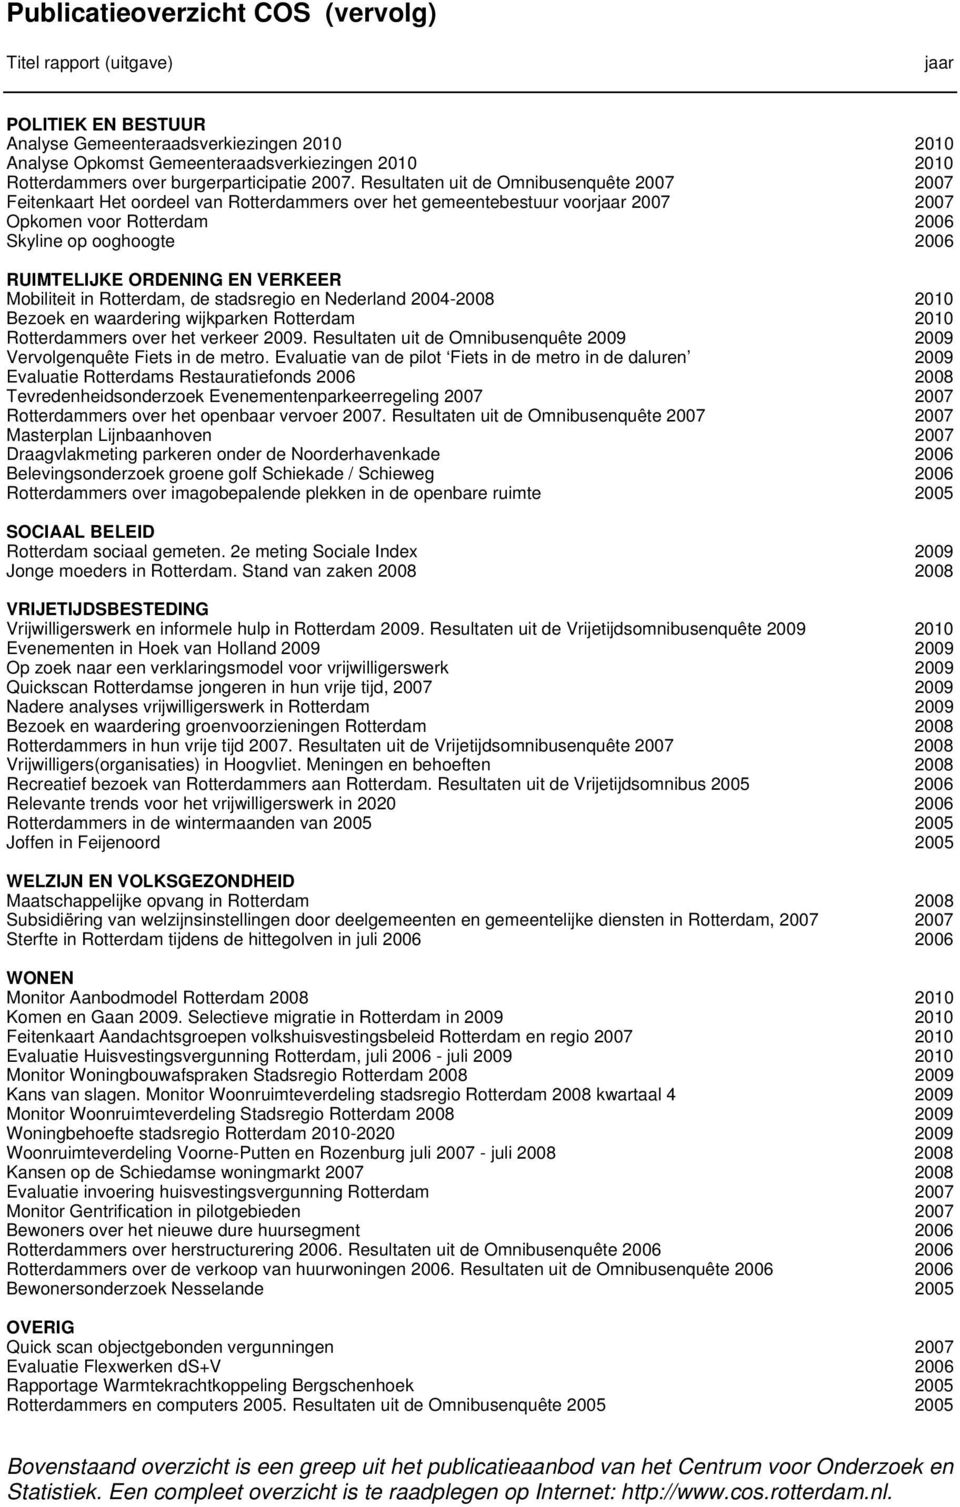 Resultaten uit de Omnibusenquête 2007 2007 Feitenkaart Het oordeel van Rotterdammers over het gemeentebestuur voorjaar 2007 2007 Opkomen voor Rotterdam 2006 Skyline op ooghoogte 2006 RUIMTELIJKE